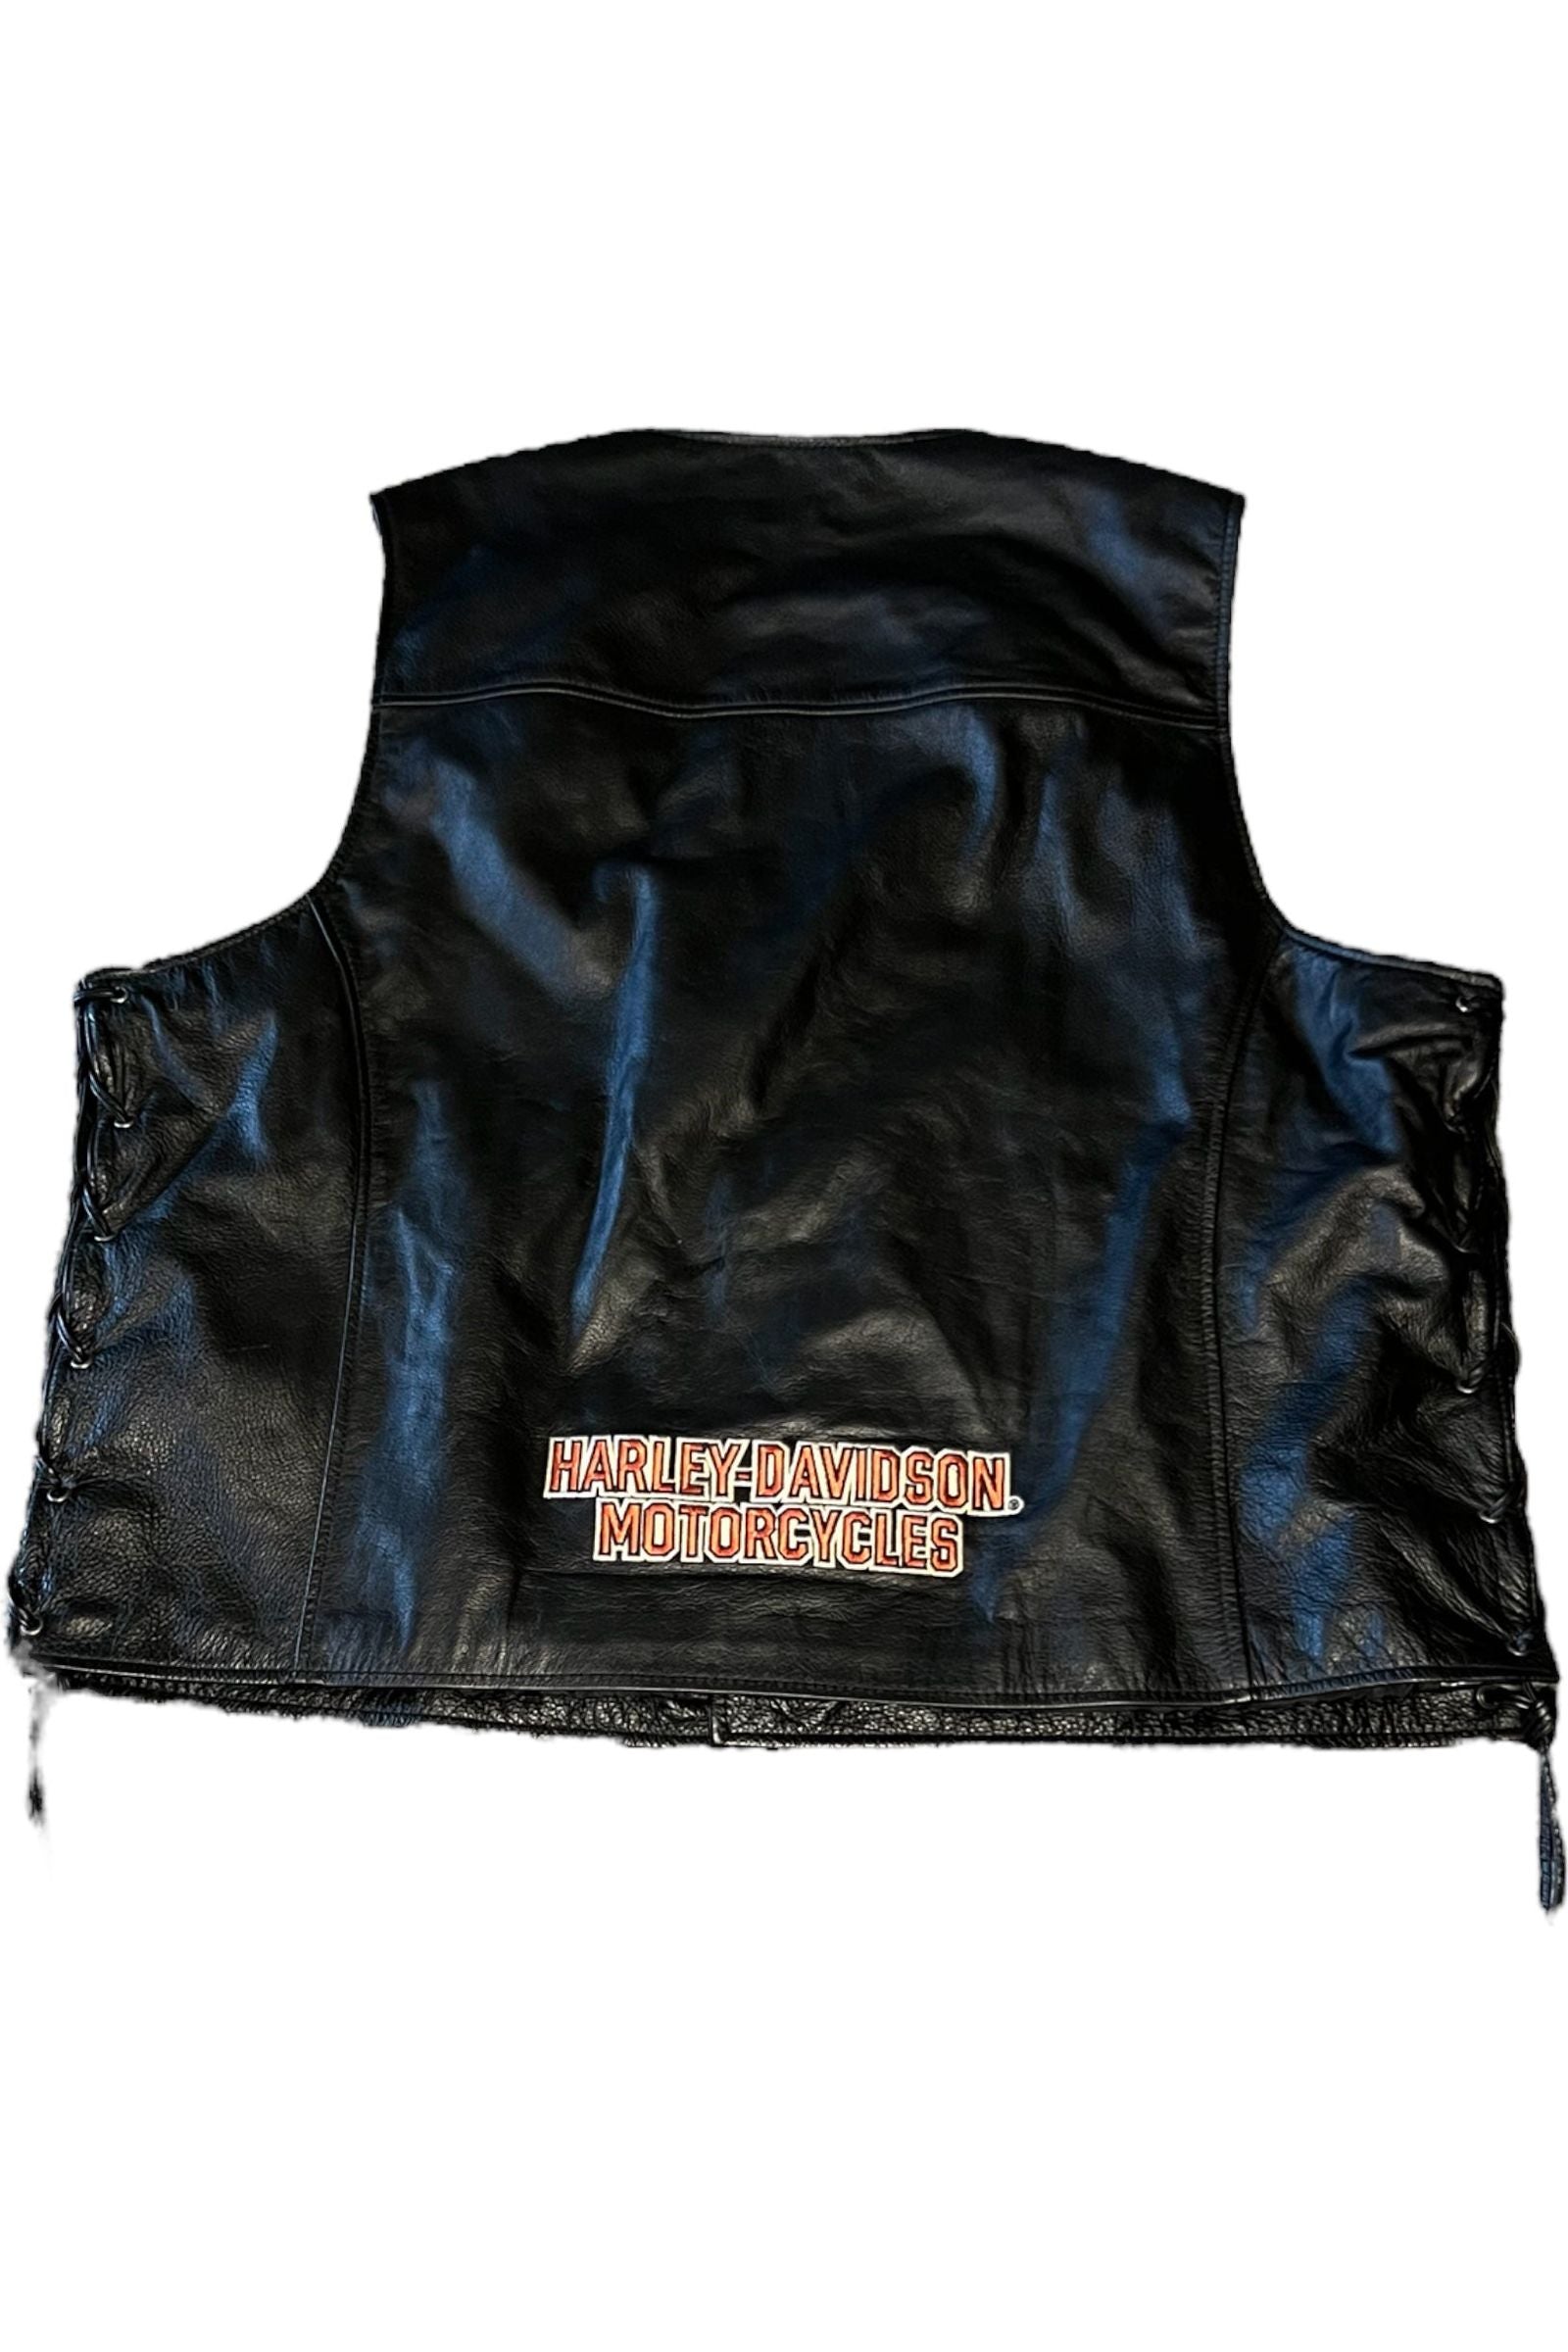 Harley Davidson Leather Vest - La Kultura